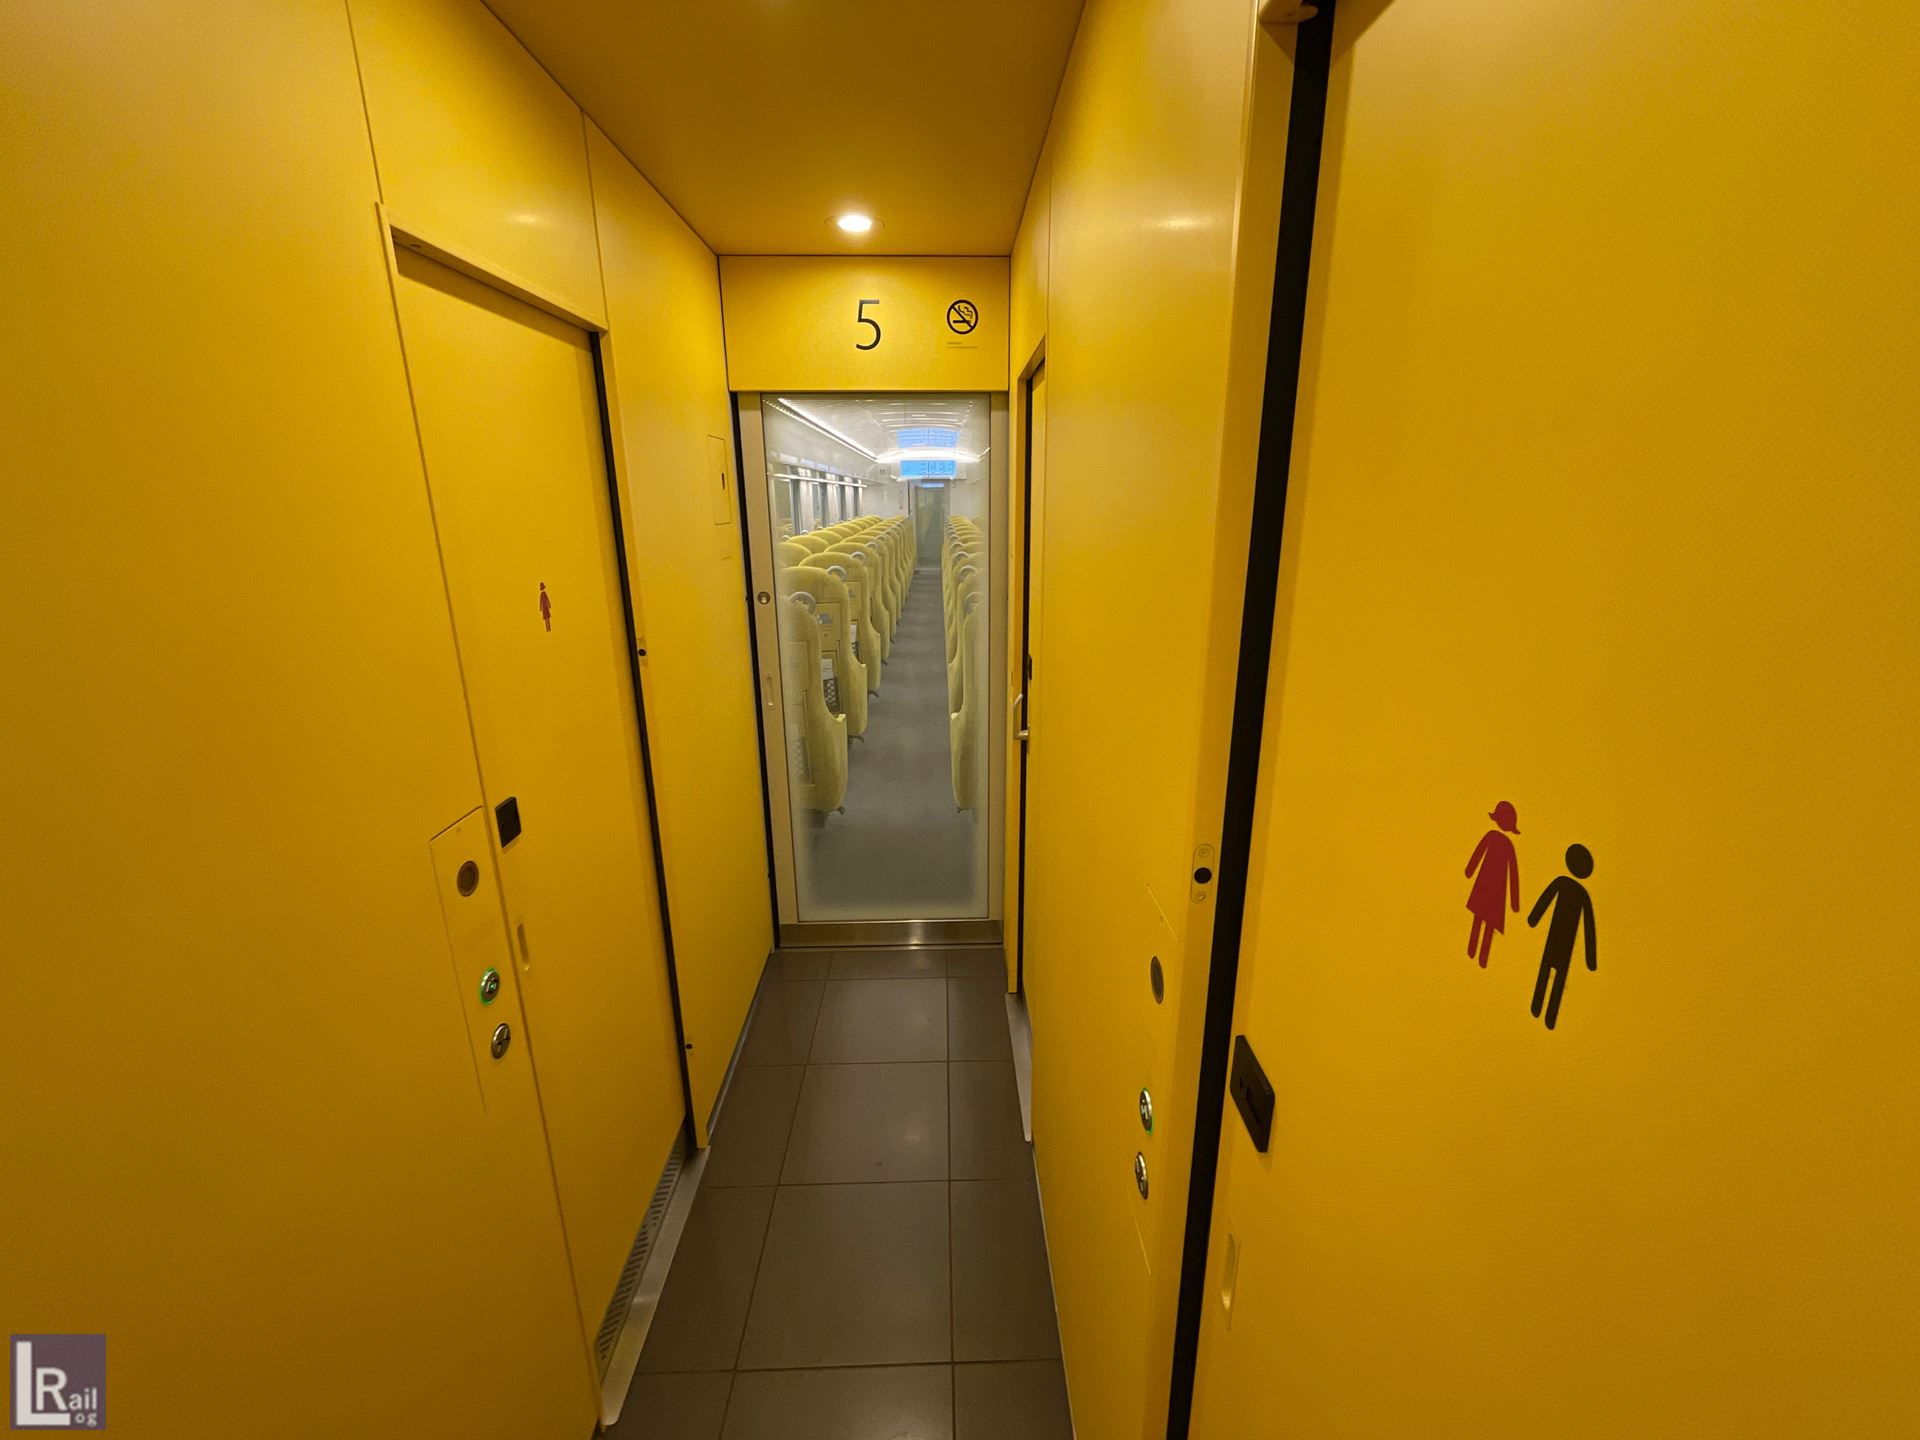 ラビューの5号車には3つのトイレが設けられています。
女性専用トイレがあるのが特徴的。